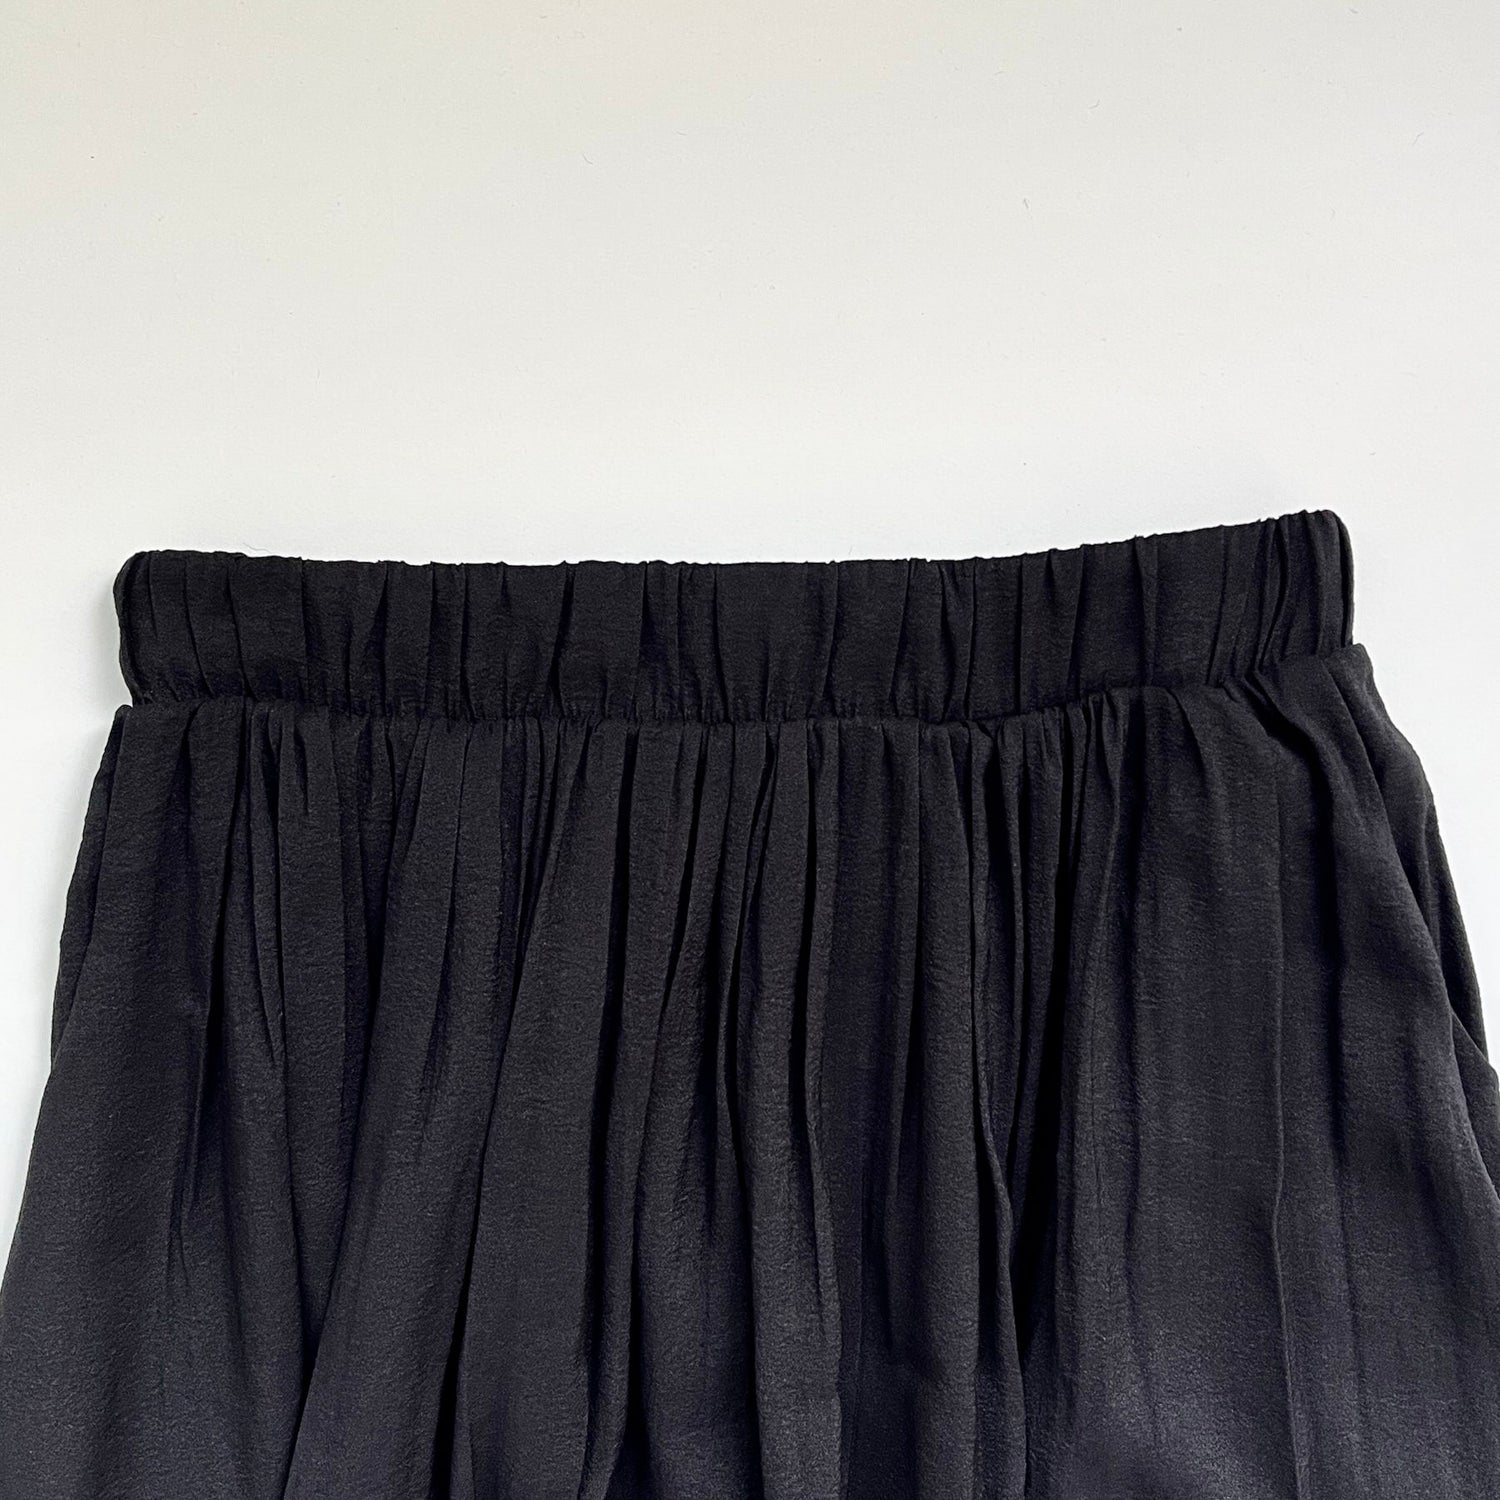 【SAMPLE】long volume pleats skirt / black